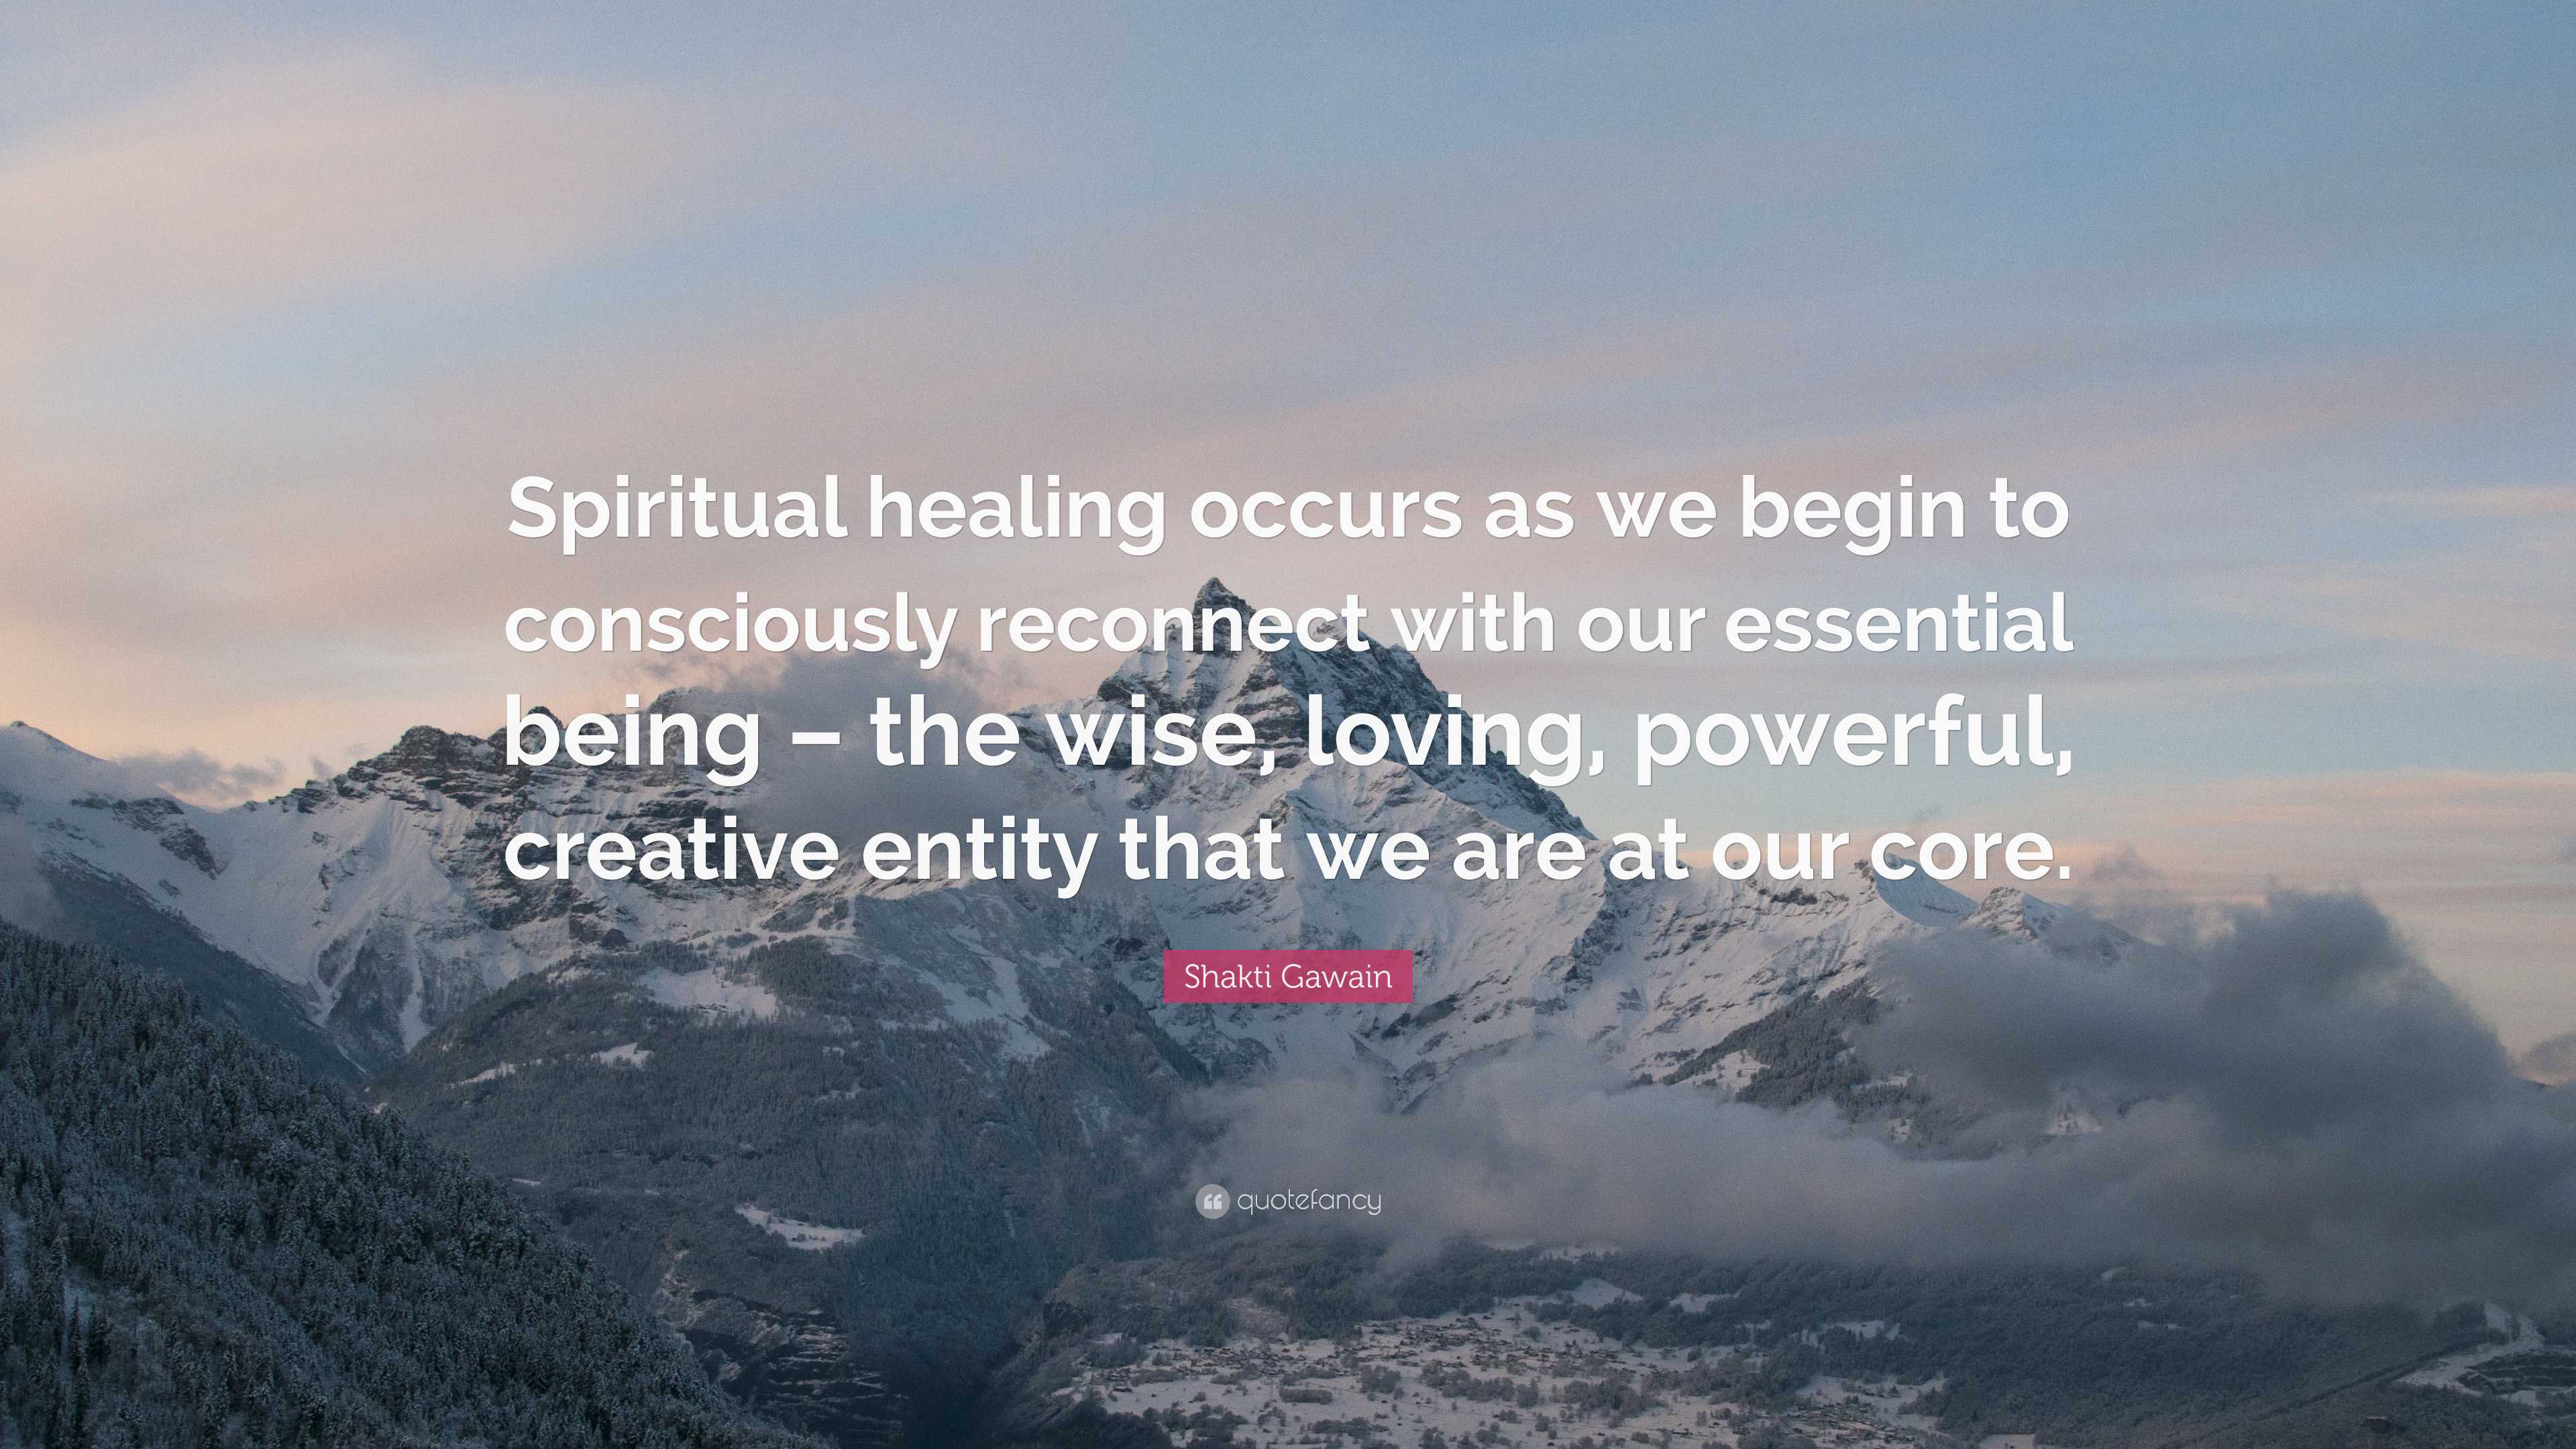 Shakti Gawain Quote: “Spiritual healing occurs as we begin to ...